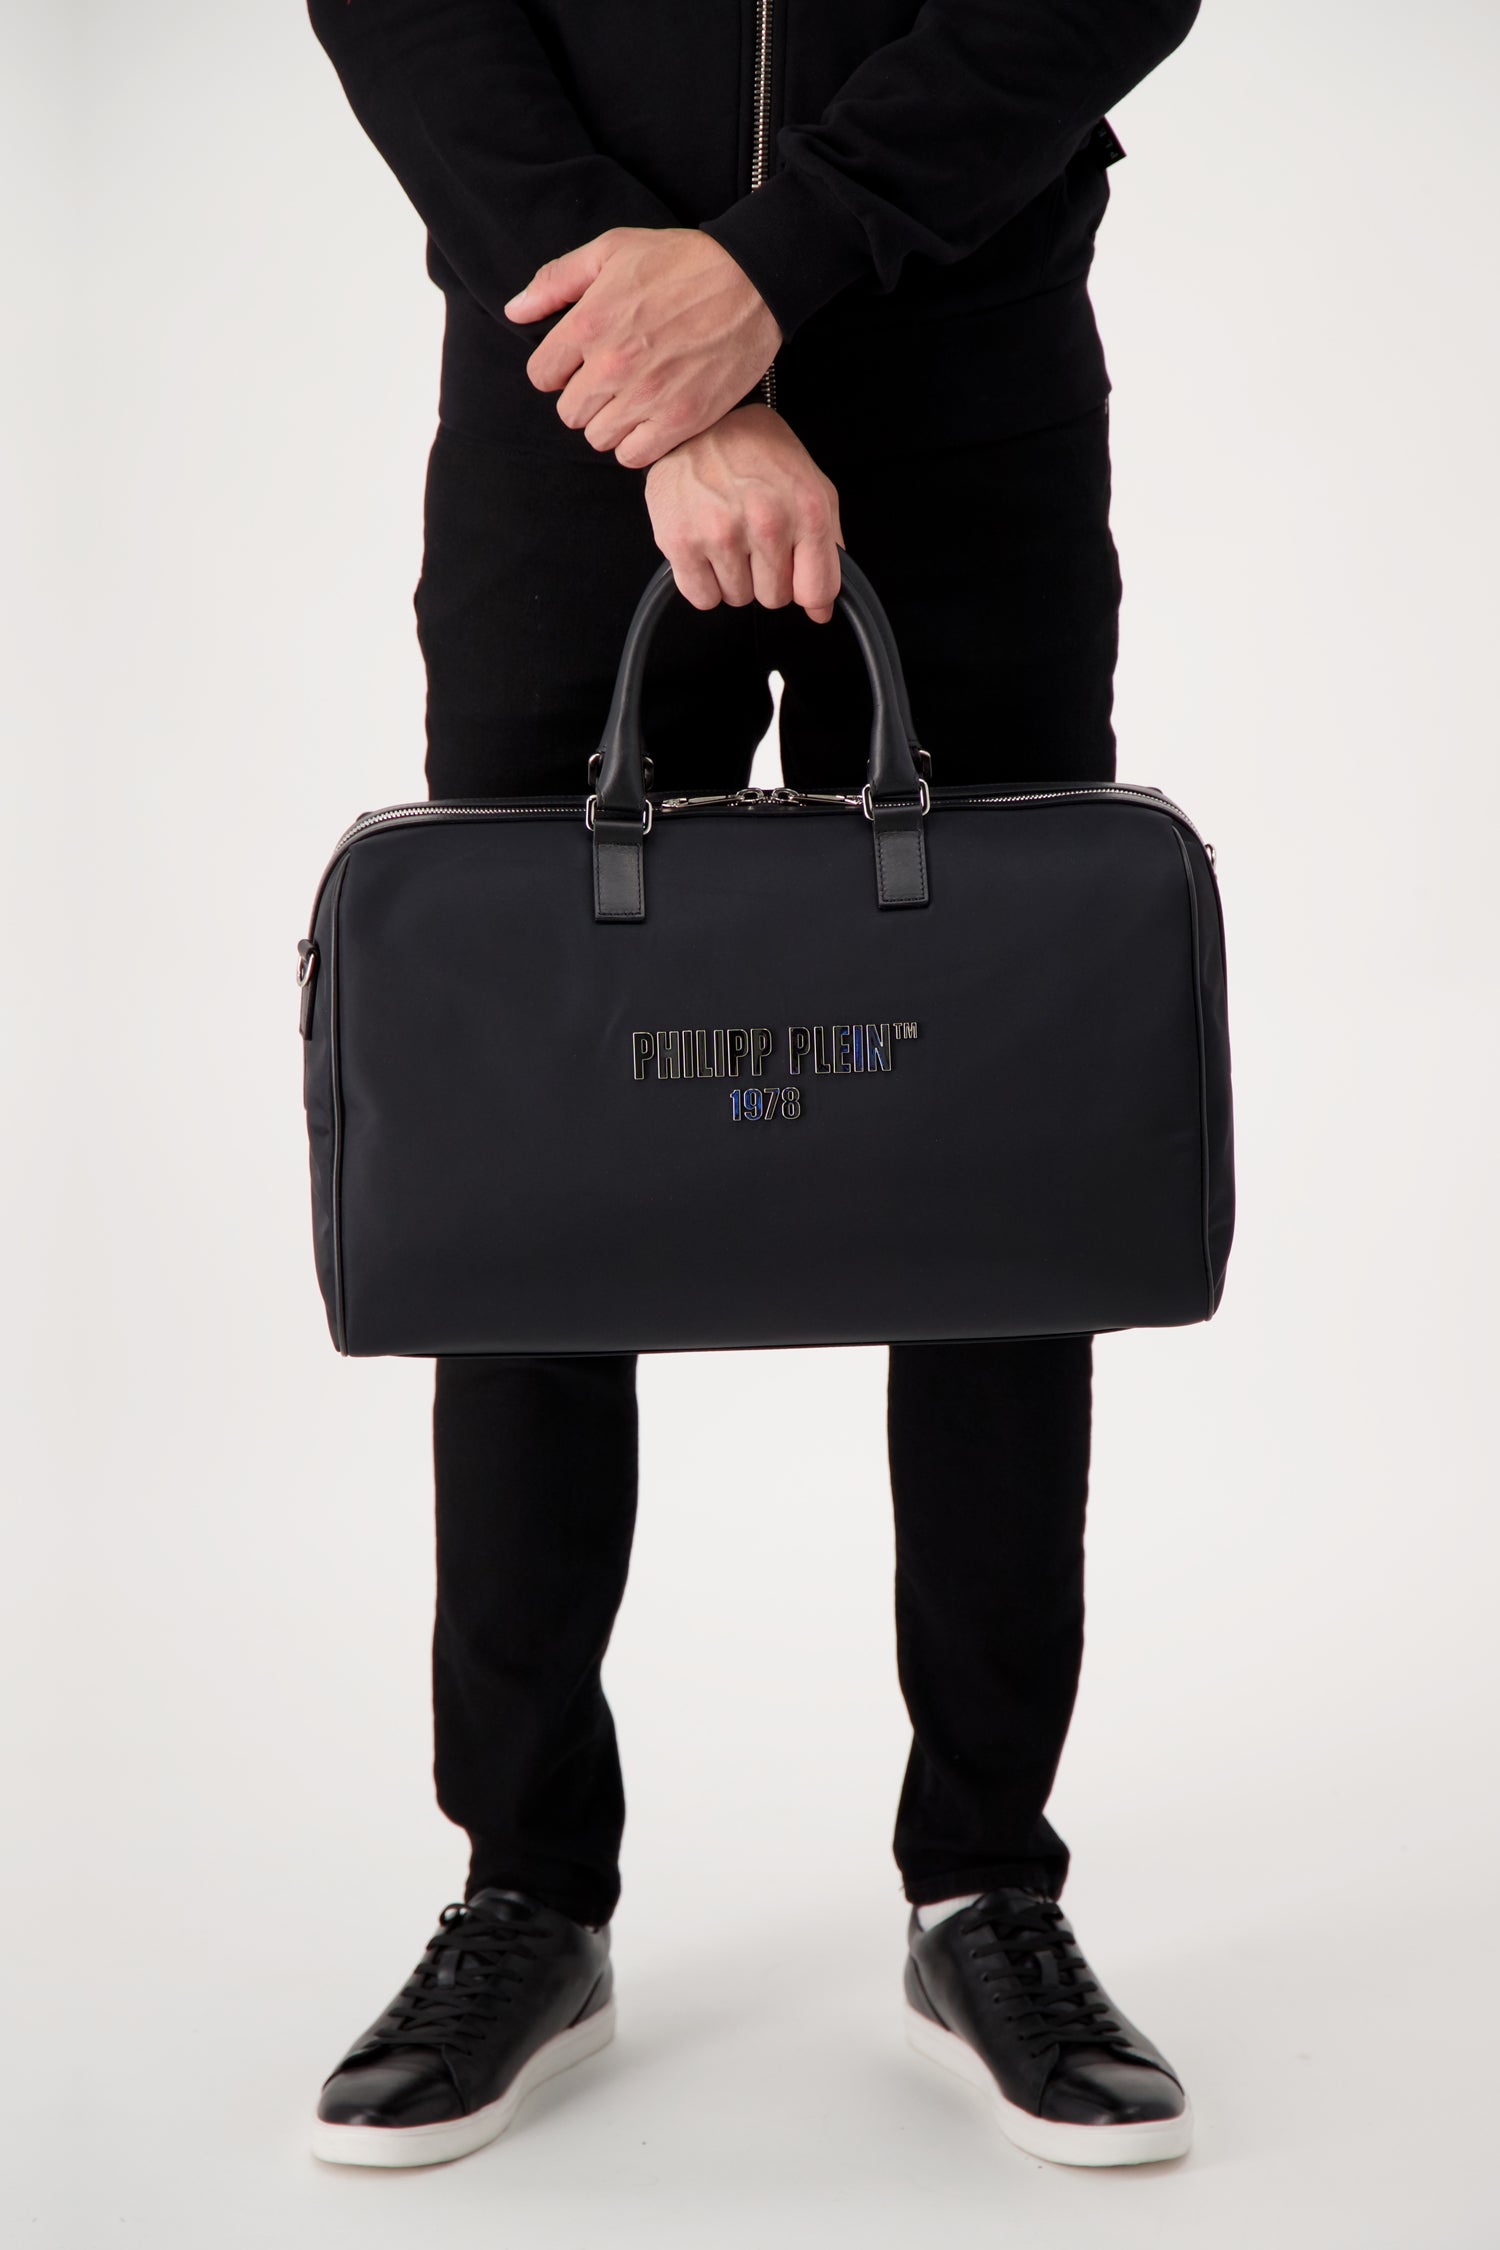 Philipp Plein Medium Travel Bag